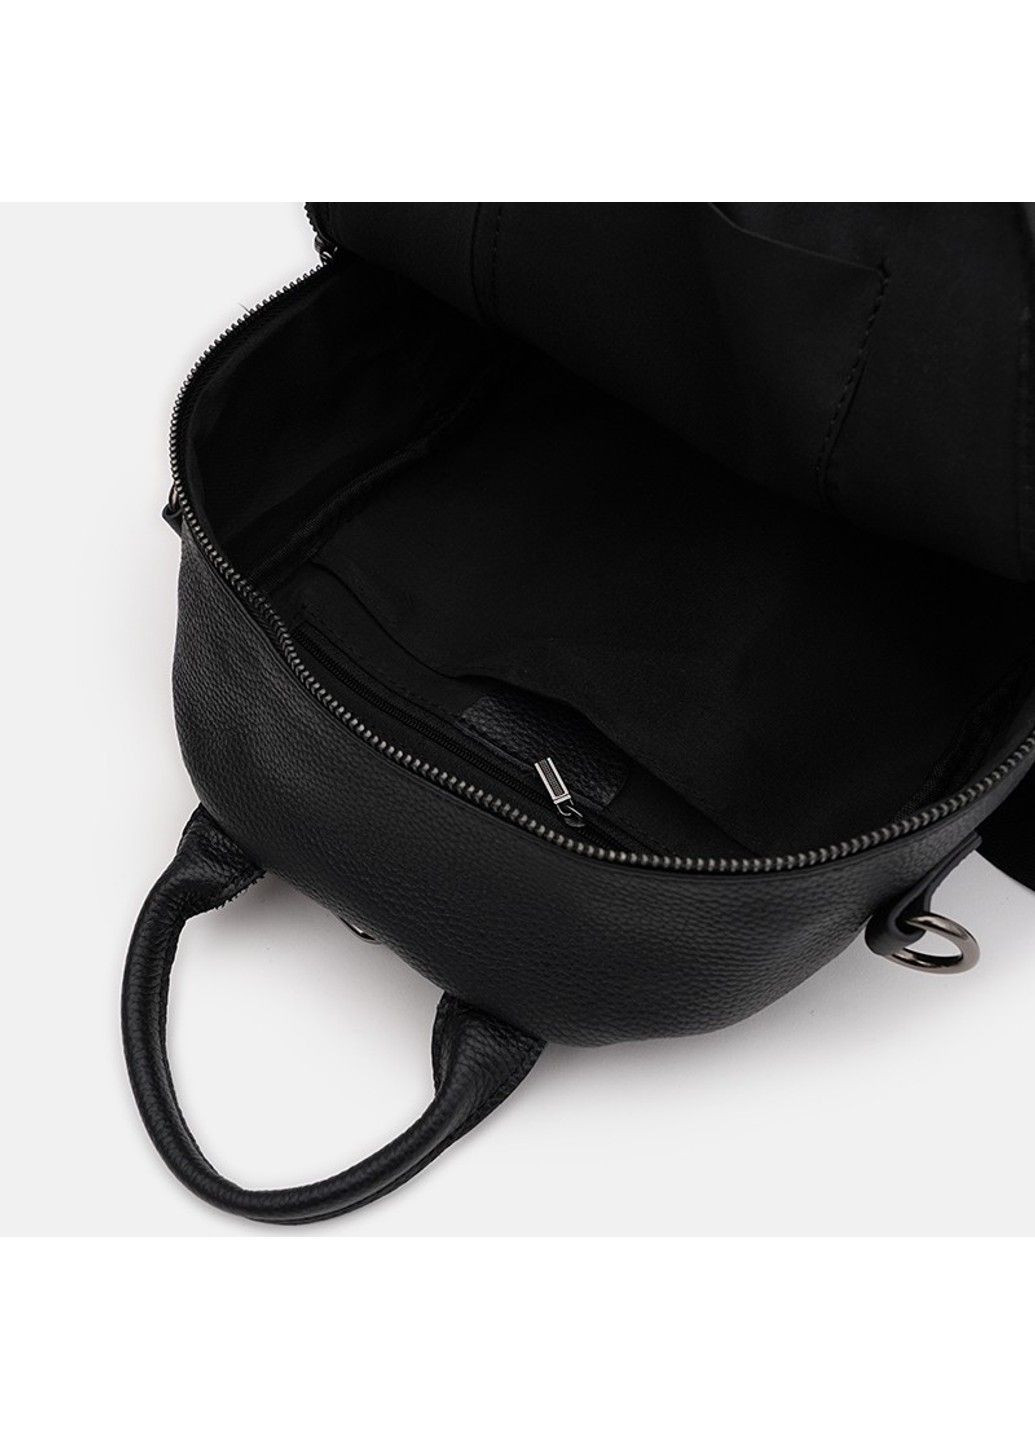 Шкіряний жіночий рюкзак k1857-2bl-black Keizer (291683165)